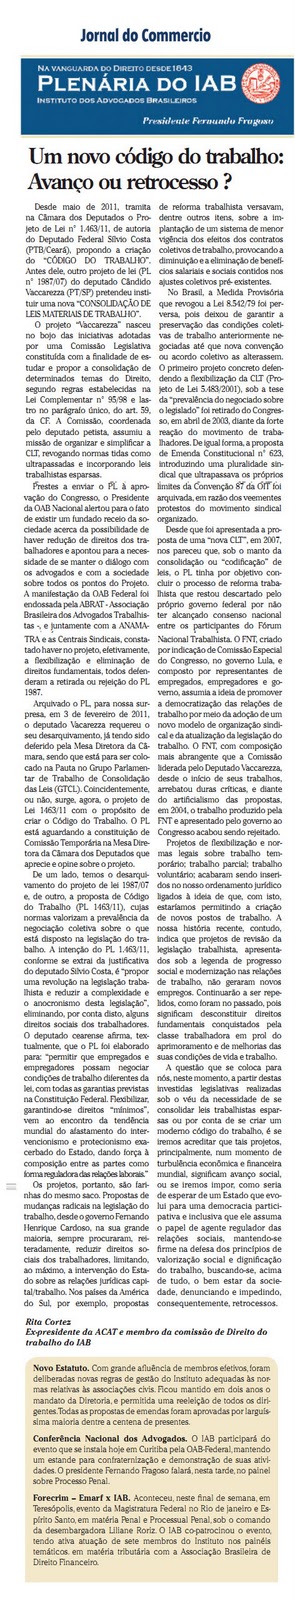 Rita Cortez assina coluna do IAB desta semana, no Jornal do Commércio, sobre um novo Código do Trabalho